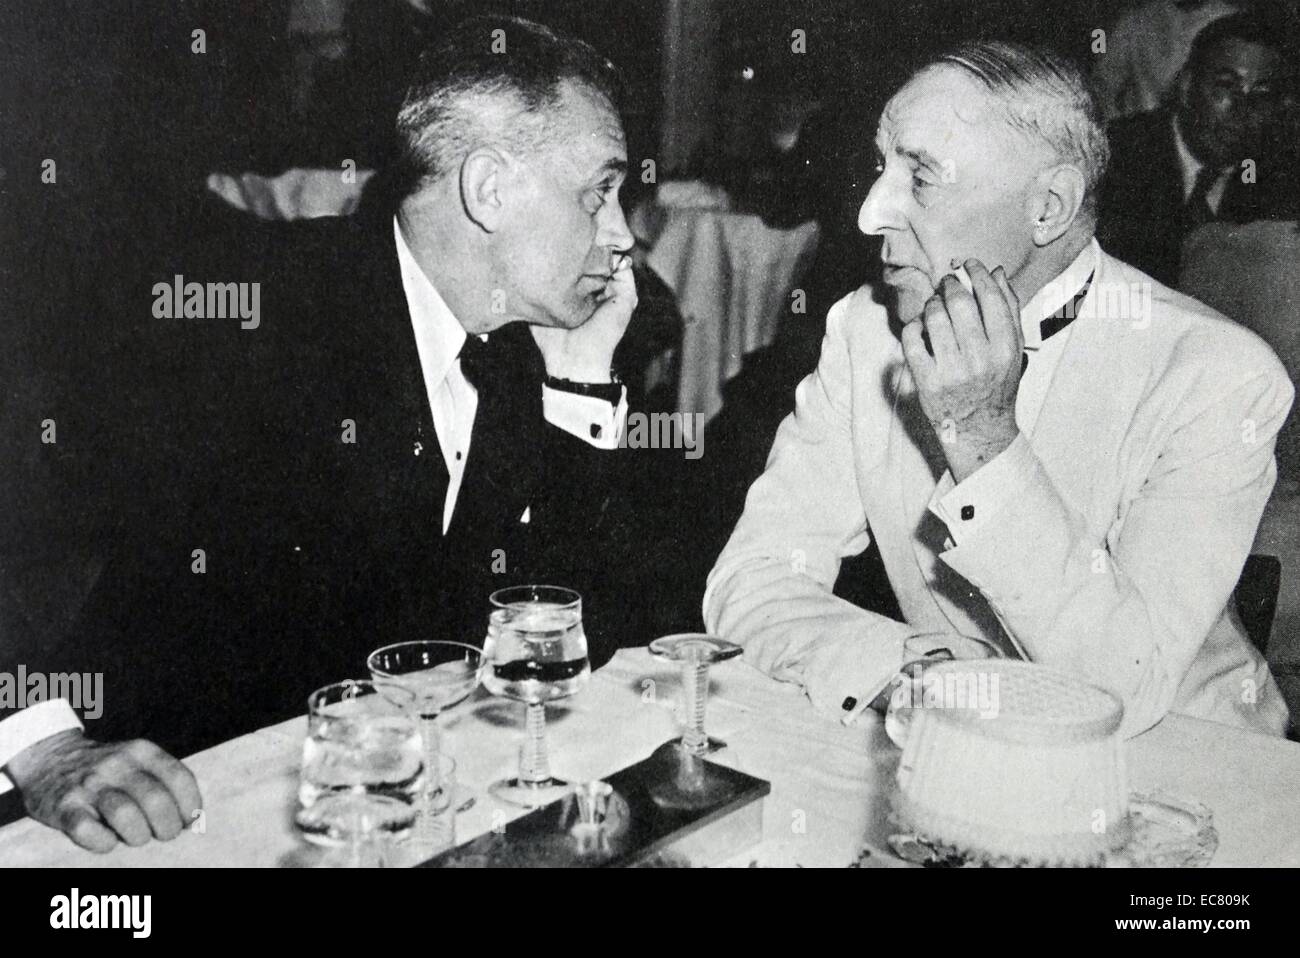 Por la noche, apariciones en solitario movieland cabarets eran casi olvidado D W Griffith y W S Van Dyke, director de "intolerancia". Foto de stock